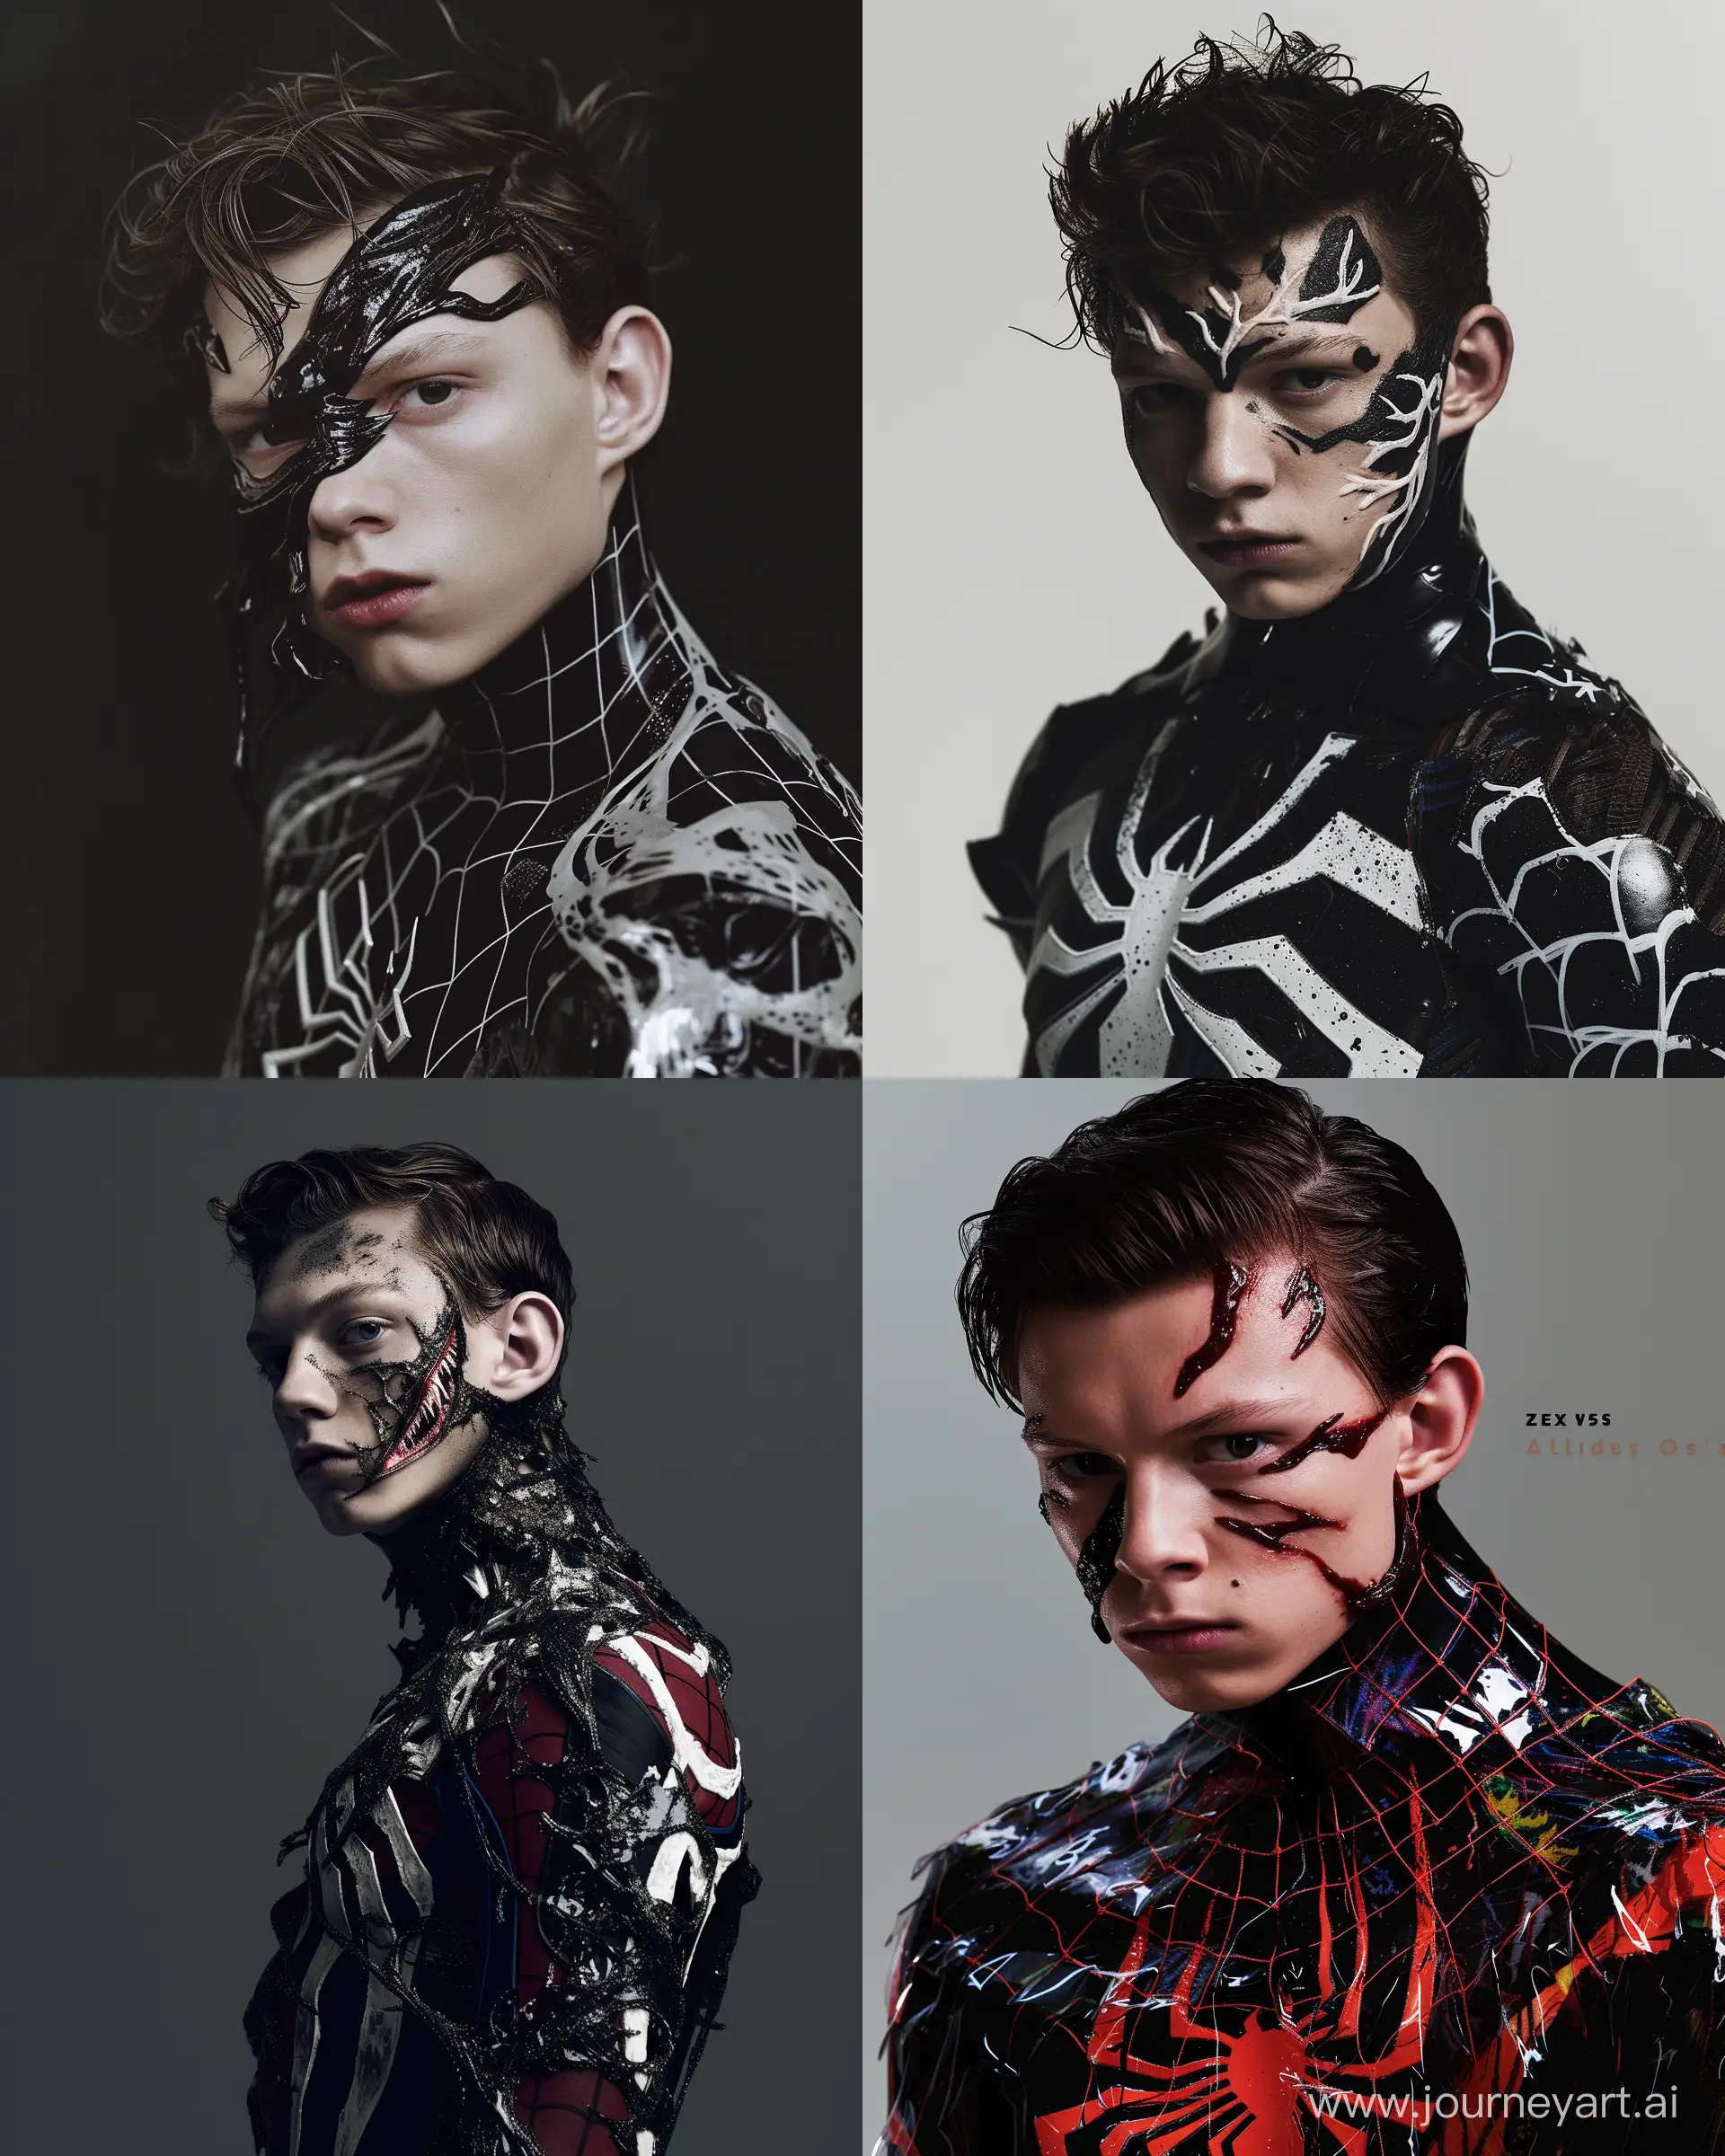 HighFashion-Elegance-Venom-SpiderMan-Tom-Holland-Captured-in-Striking-Detail-by-Miles-Aldridge